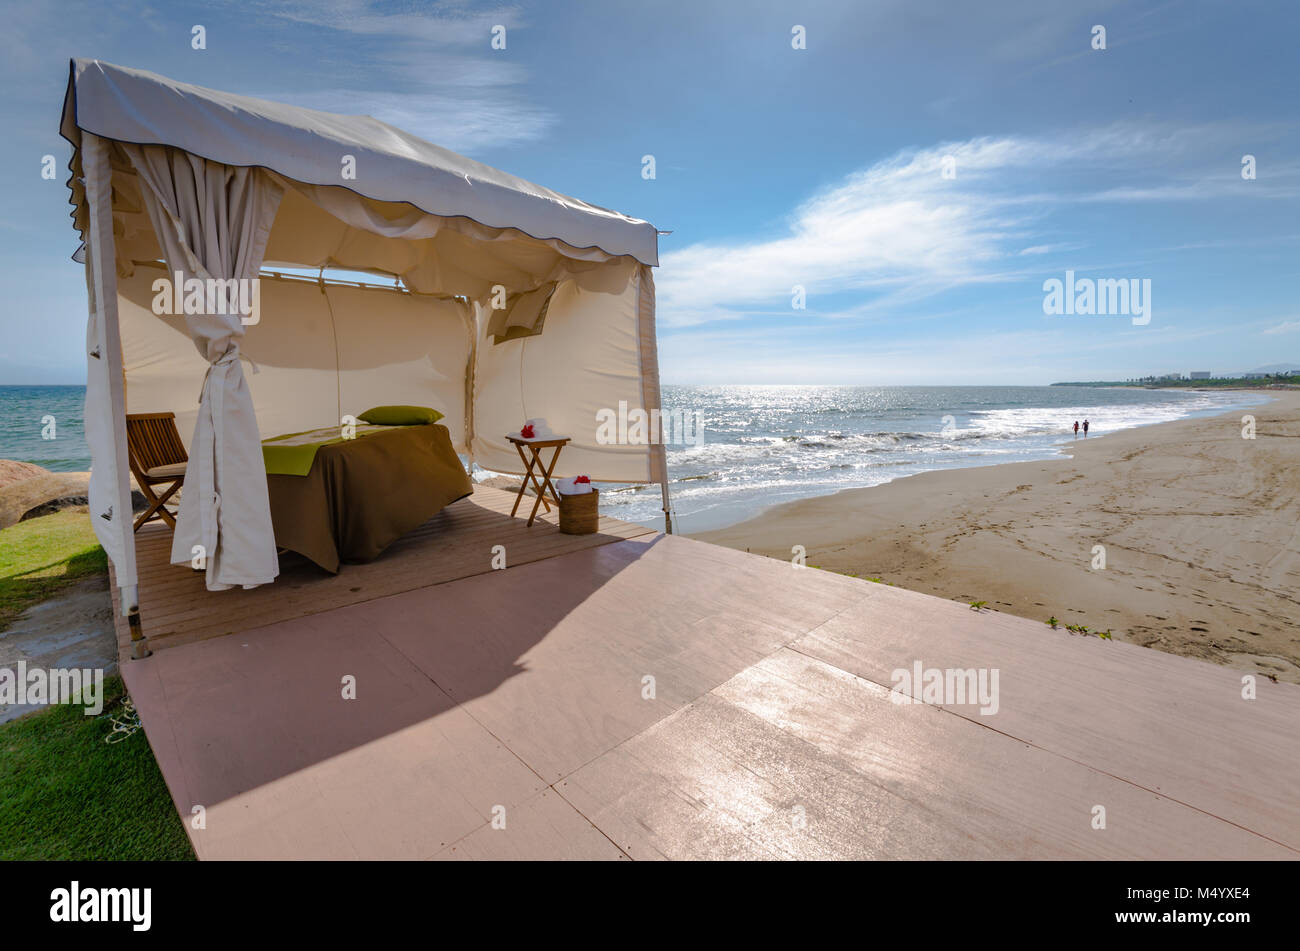 Carpa Blanca cabana configurado para tratamiento de spa en la playa en Puerto Vallarta, México. Foto de stock